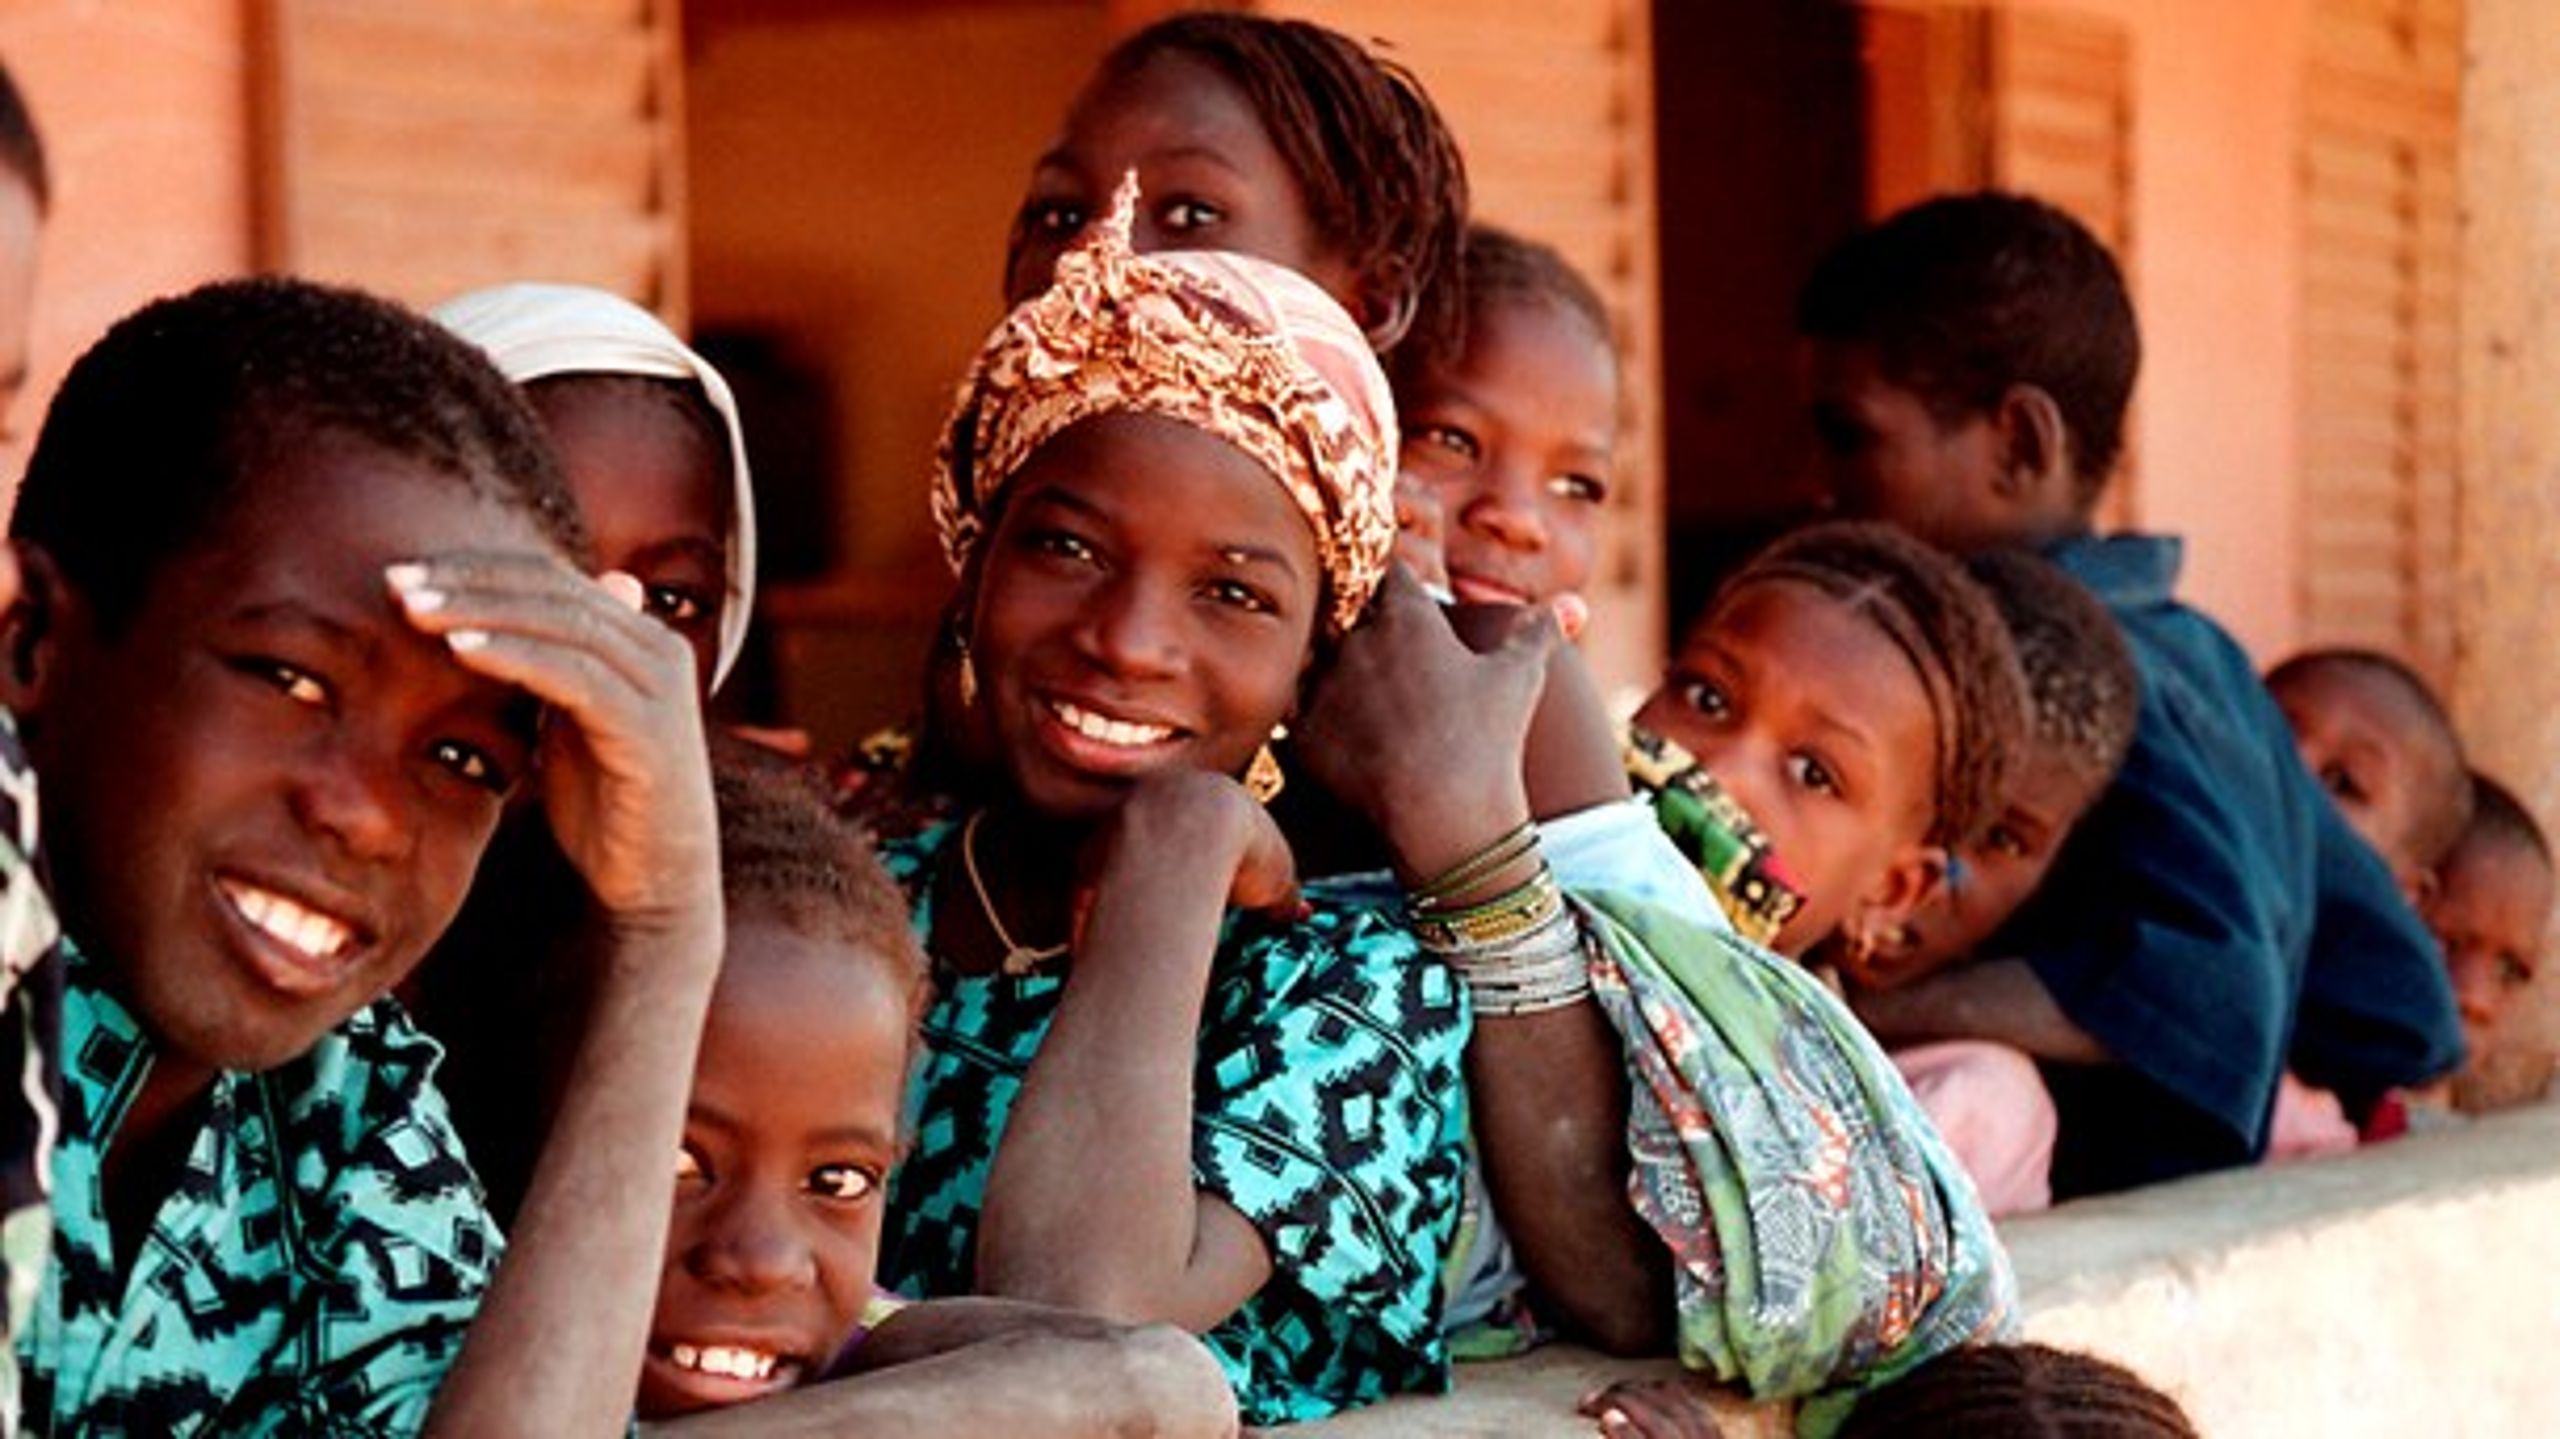 Udbredelsen af solceller i Mali&nbsp;har betydning i kampen mod både analfabetisme og børnedødelighed, skriver Steen Gade.&nbsp;